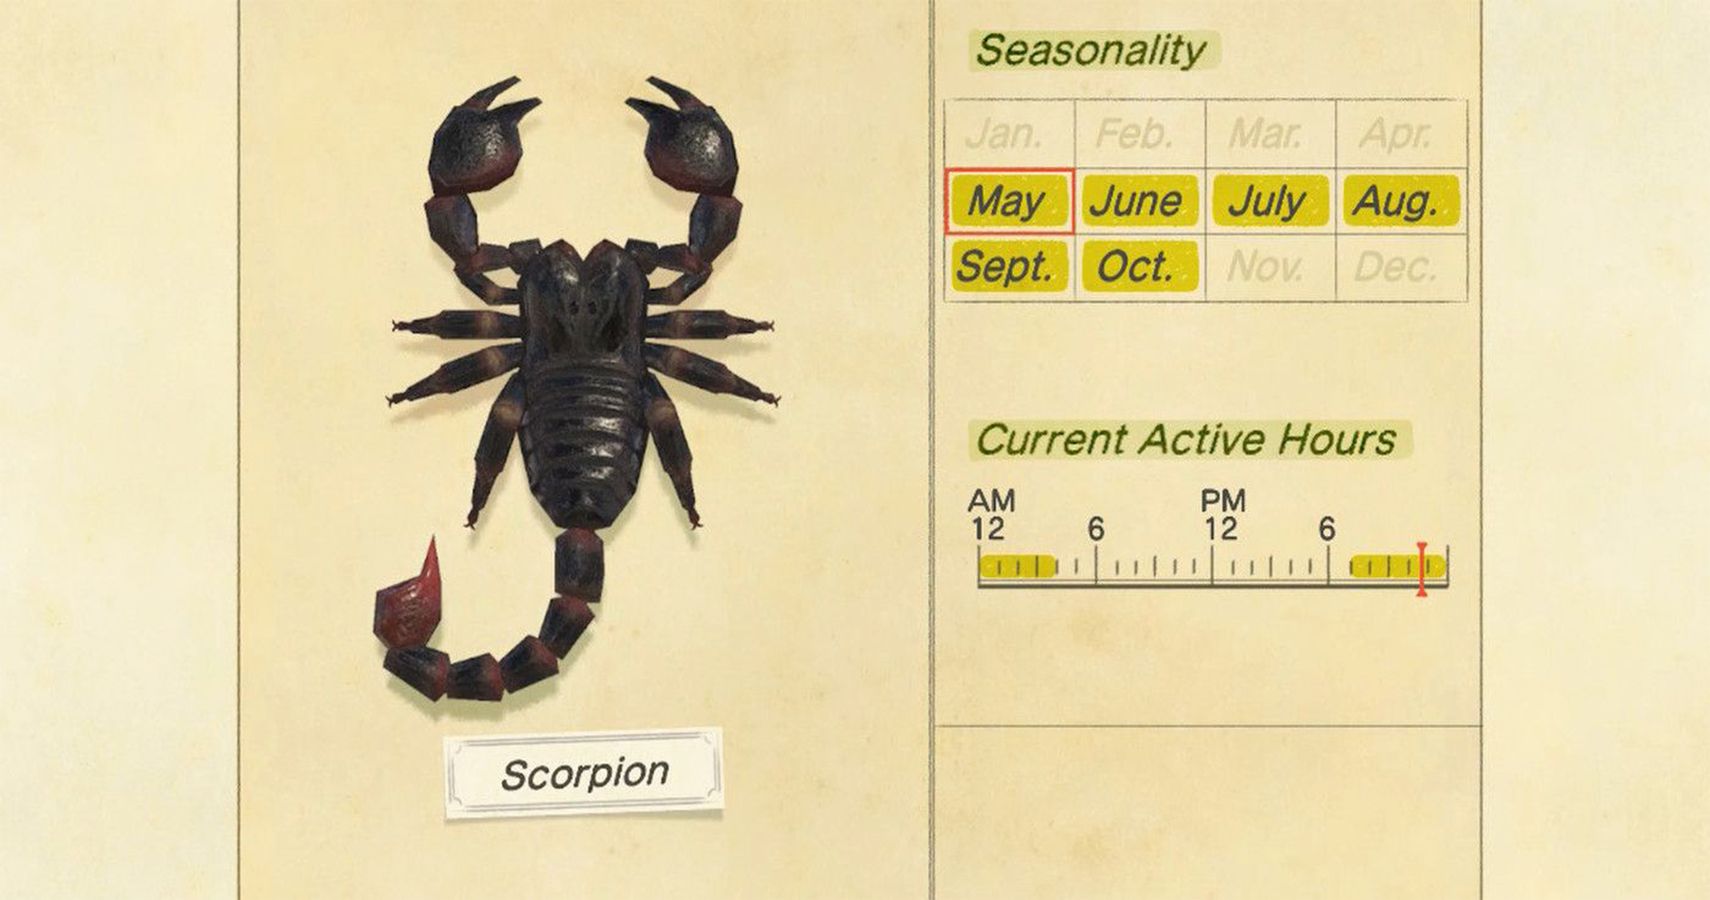 service scorpion joke